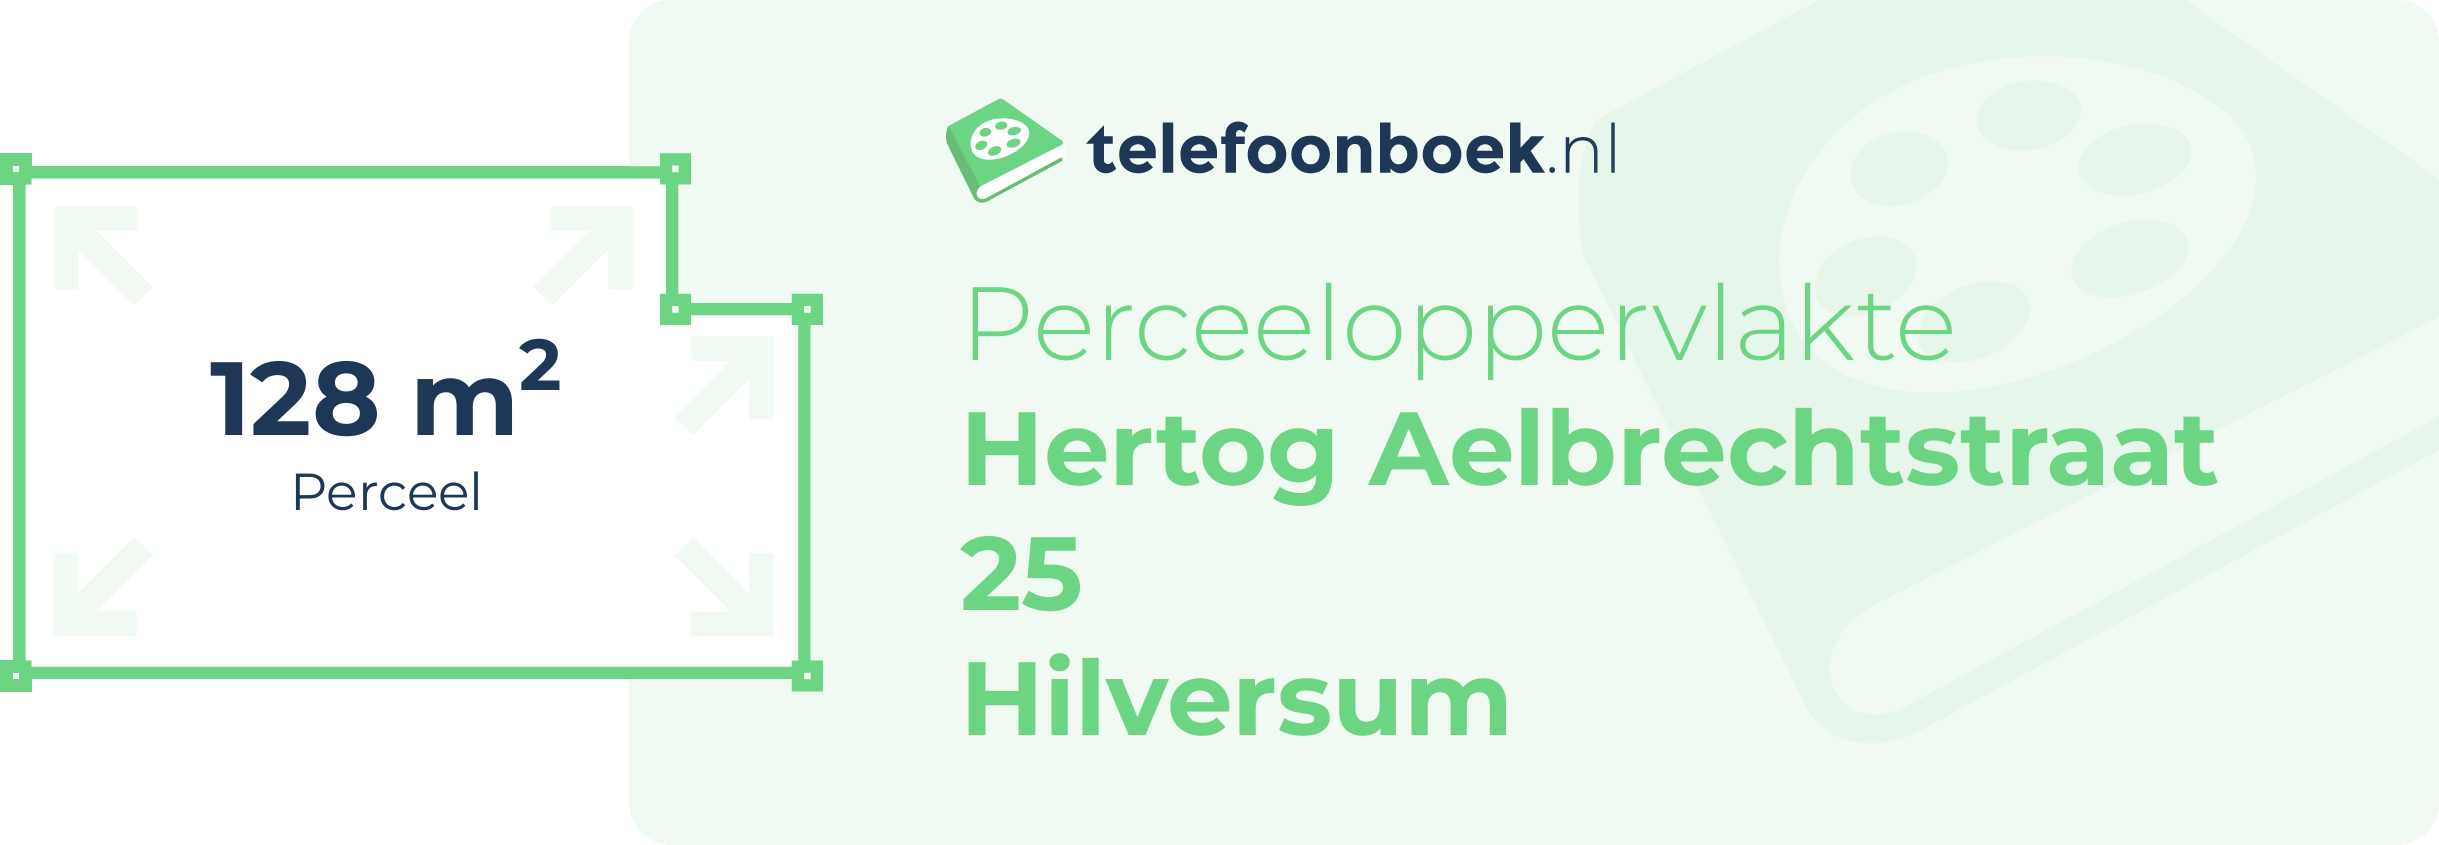 Perceeloppervlakte Hertog Aelbrechtstraat 25 Hilversum